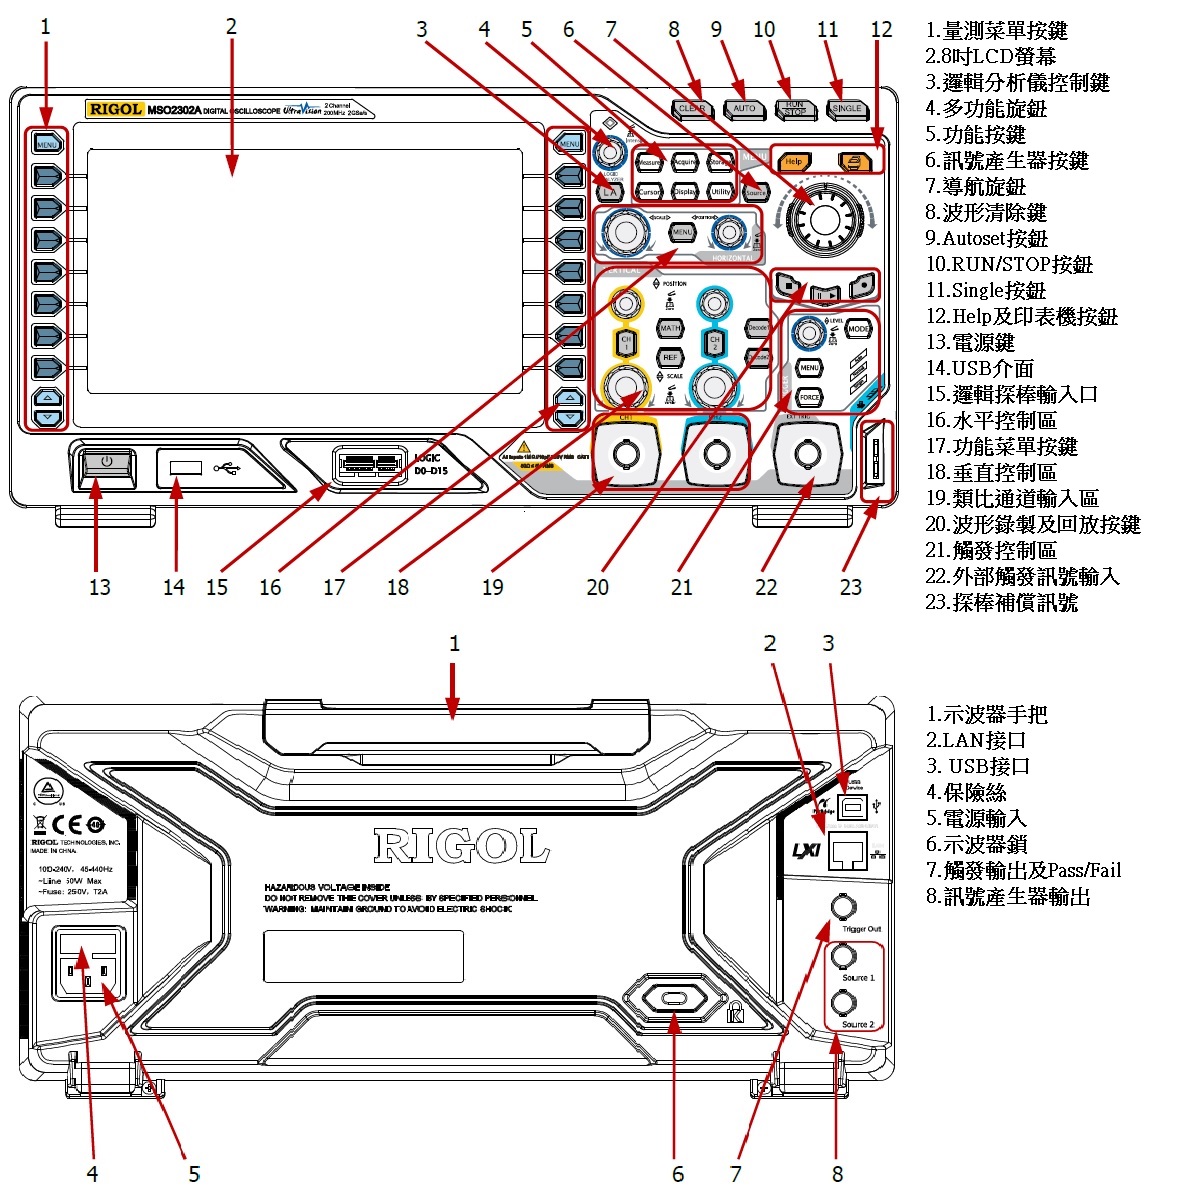 DS/MSO2000A示波器前後面板說明圖